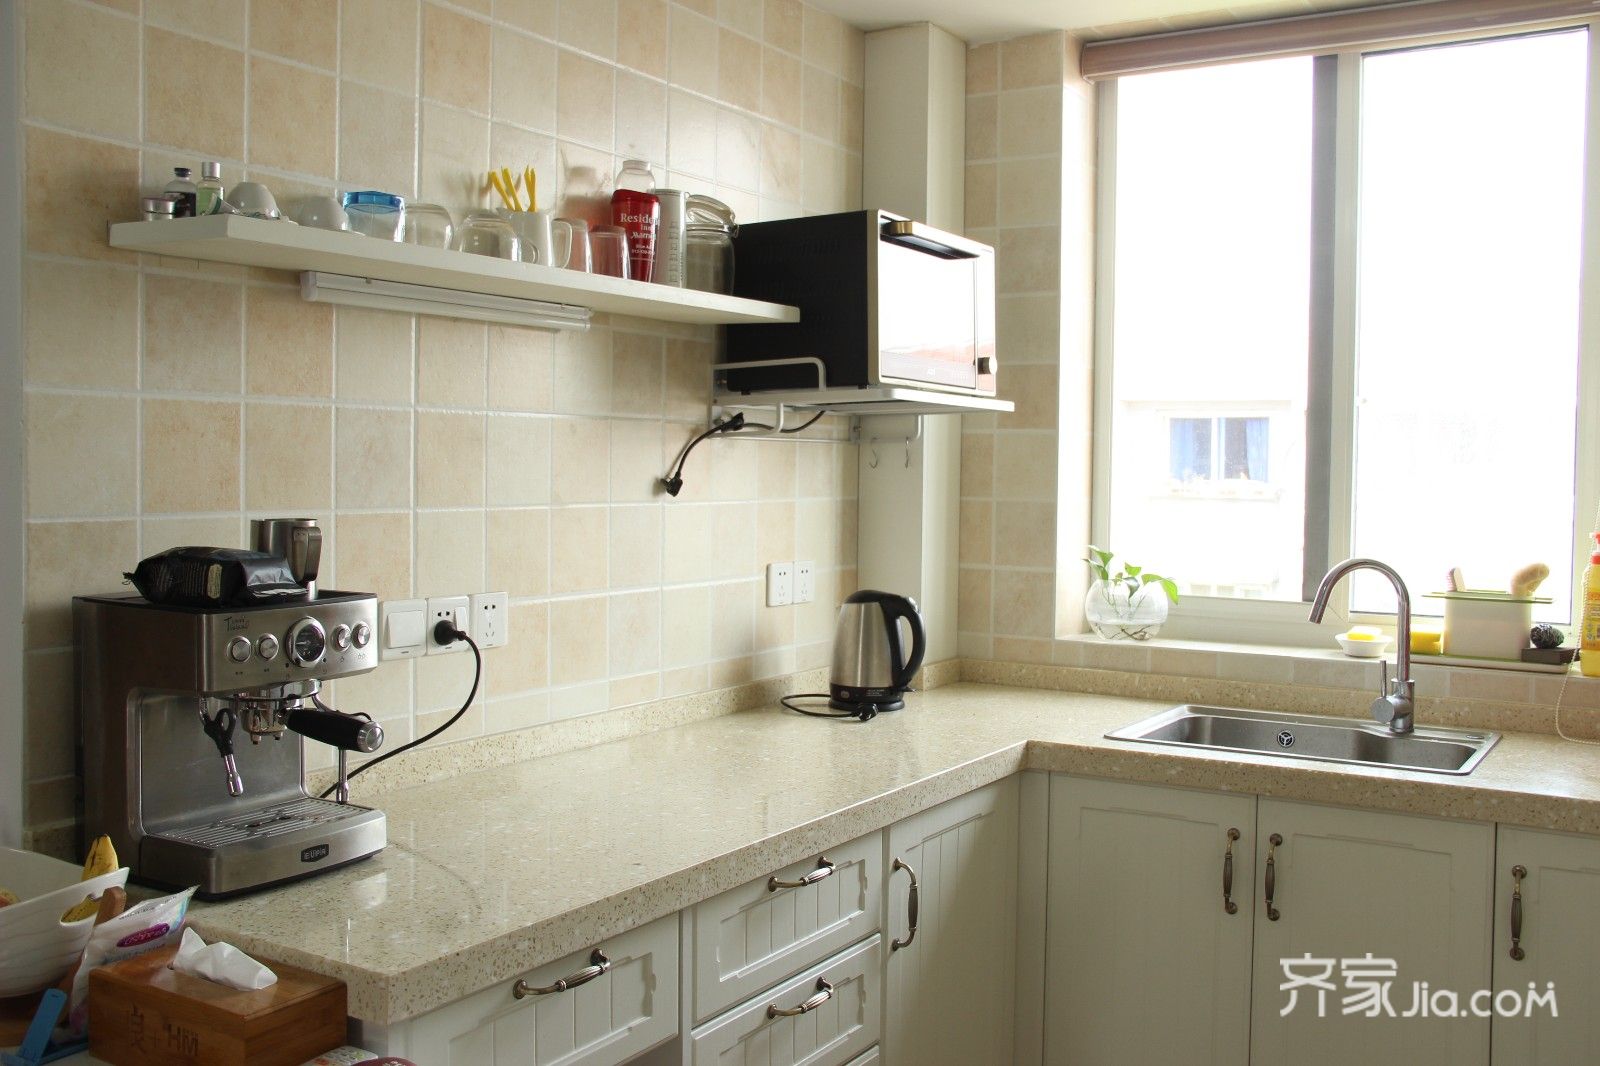 厨房以米色墙砖,搭配白色橱柜,简约爽朗的空间让做饭体验轻松舒适